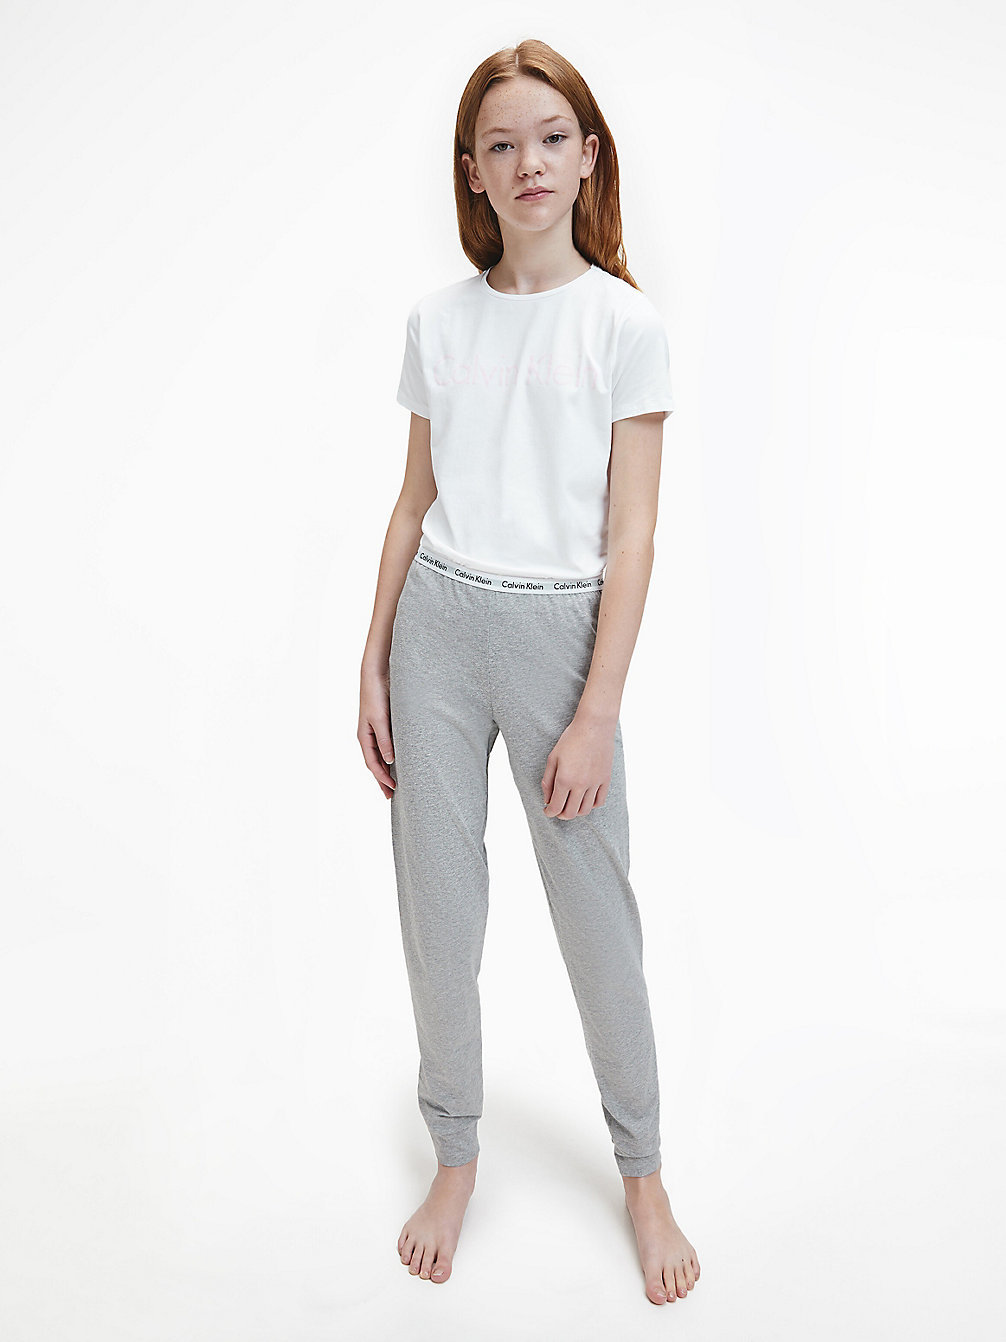 Pigiama Bambina - Modern Cotton > WHITE/GREY HTR > undefined girls > Calvin Klein